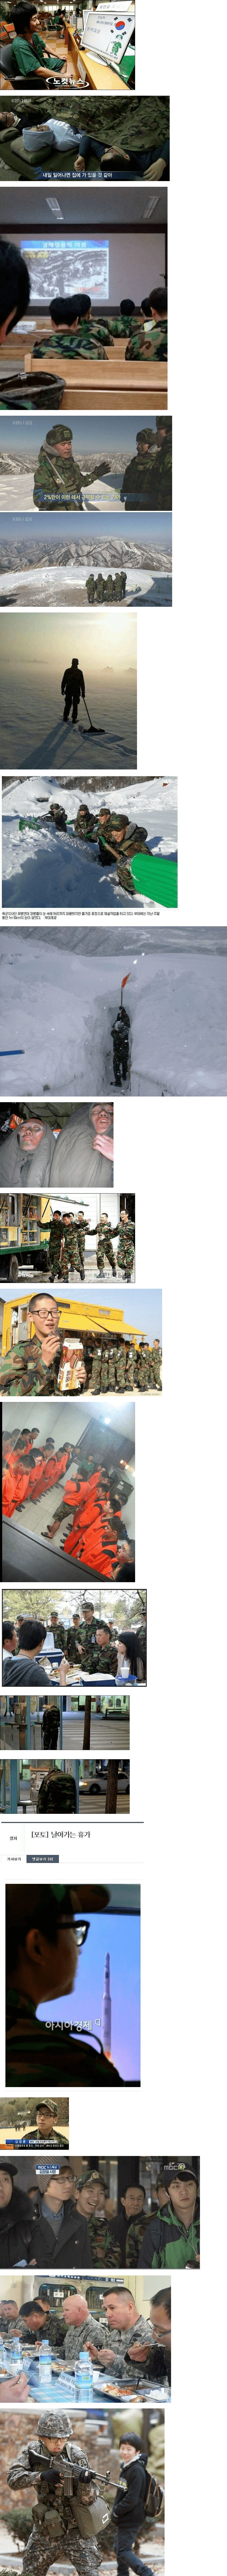 대한민국 군생활 역대급 사진들.jpg